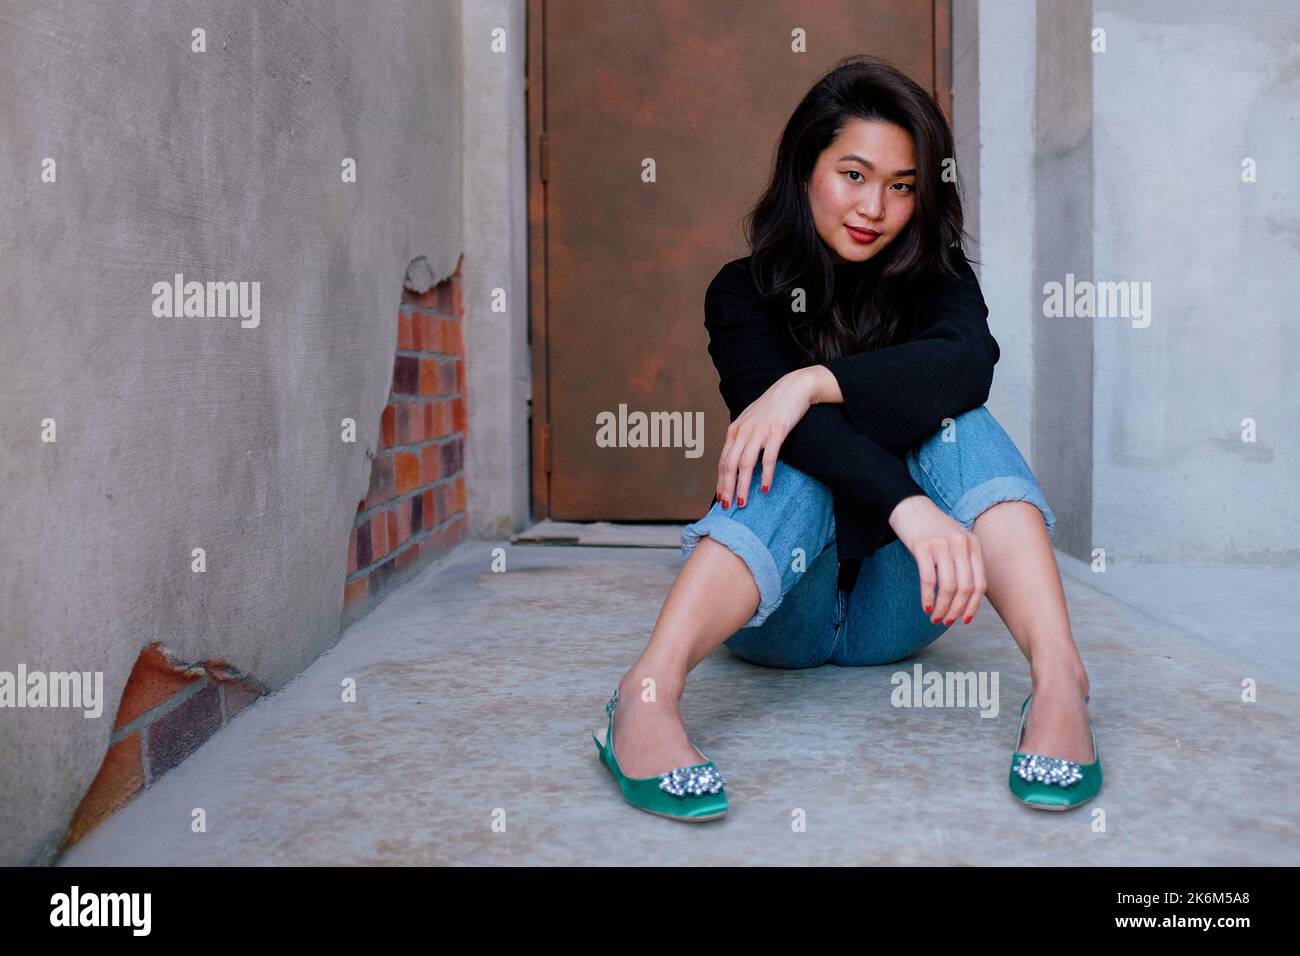 Bonita mujer del sudeste asiático que usa un suéter negro, vaqueros y zapatos verdes se sienta en el suelo fuera de una puerta del escenario. La mujer mira a la cámara. Foto de stock